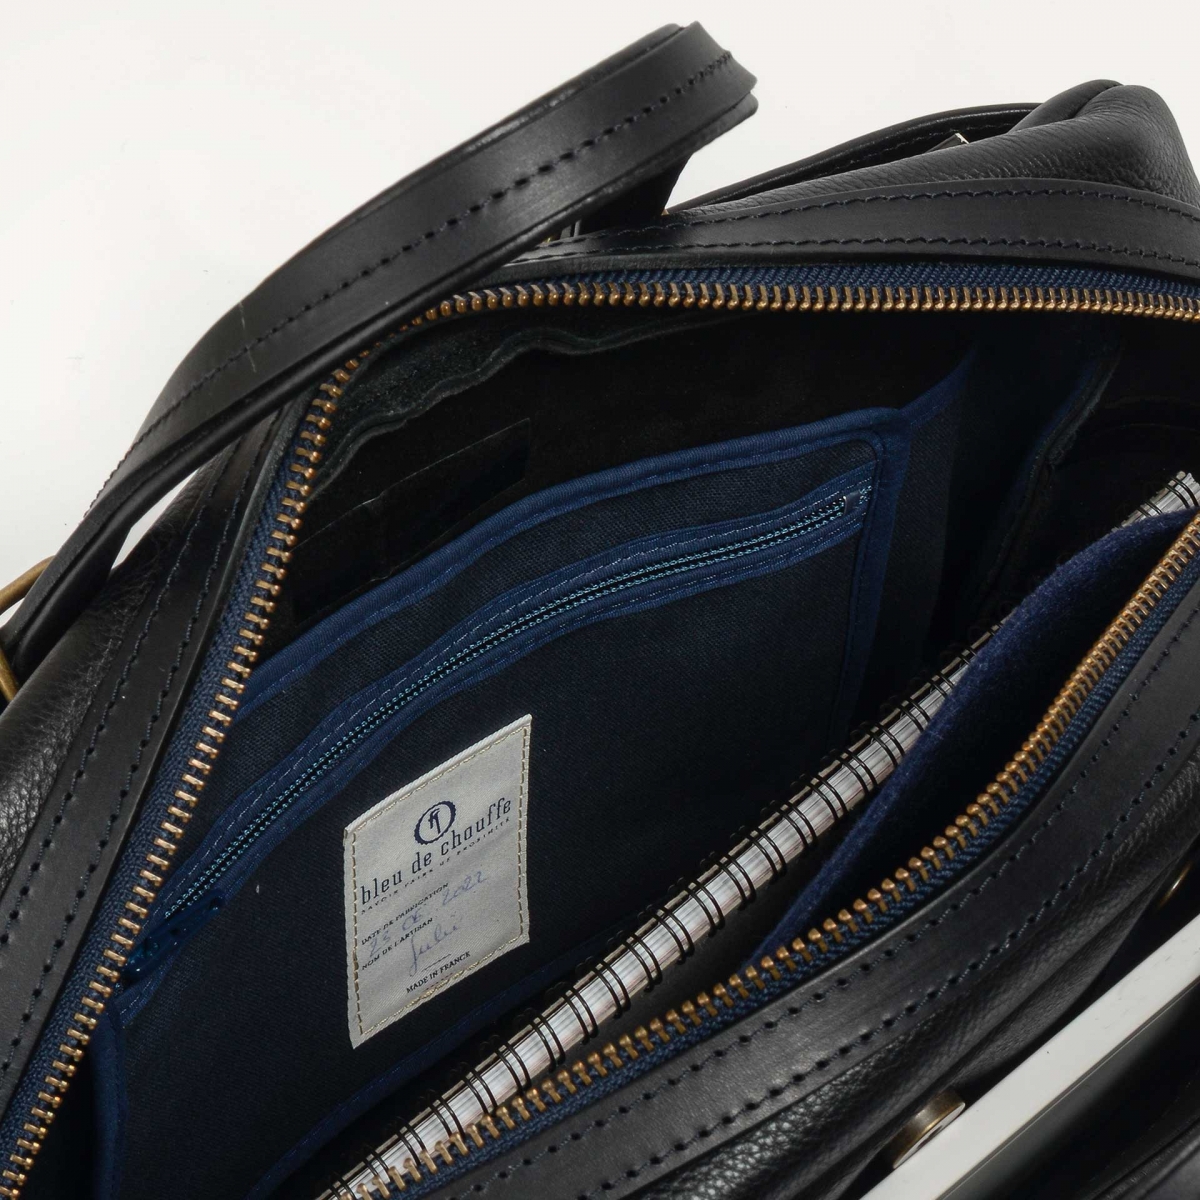 Report Business bag - Black -Men's Leather bag - Leather Laptop bag for Men  - Made in France